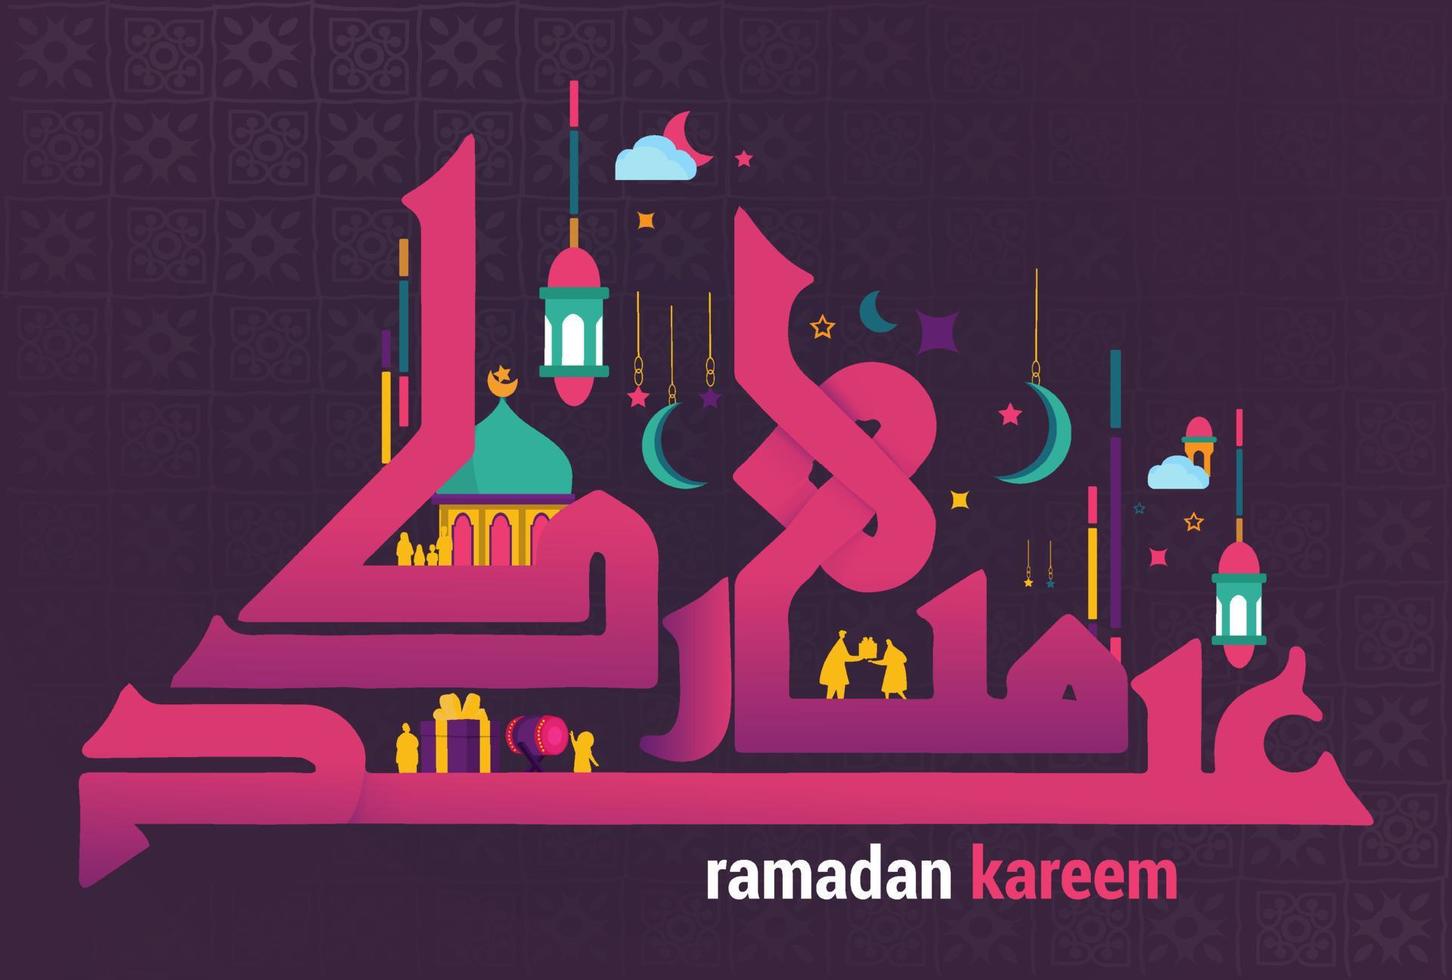 ramadan kareem i söt arabisk kalligrafi med färgglad design, lyktaikon och muslimsk aktivitet. vektor